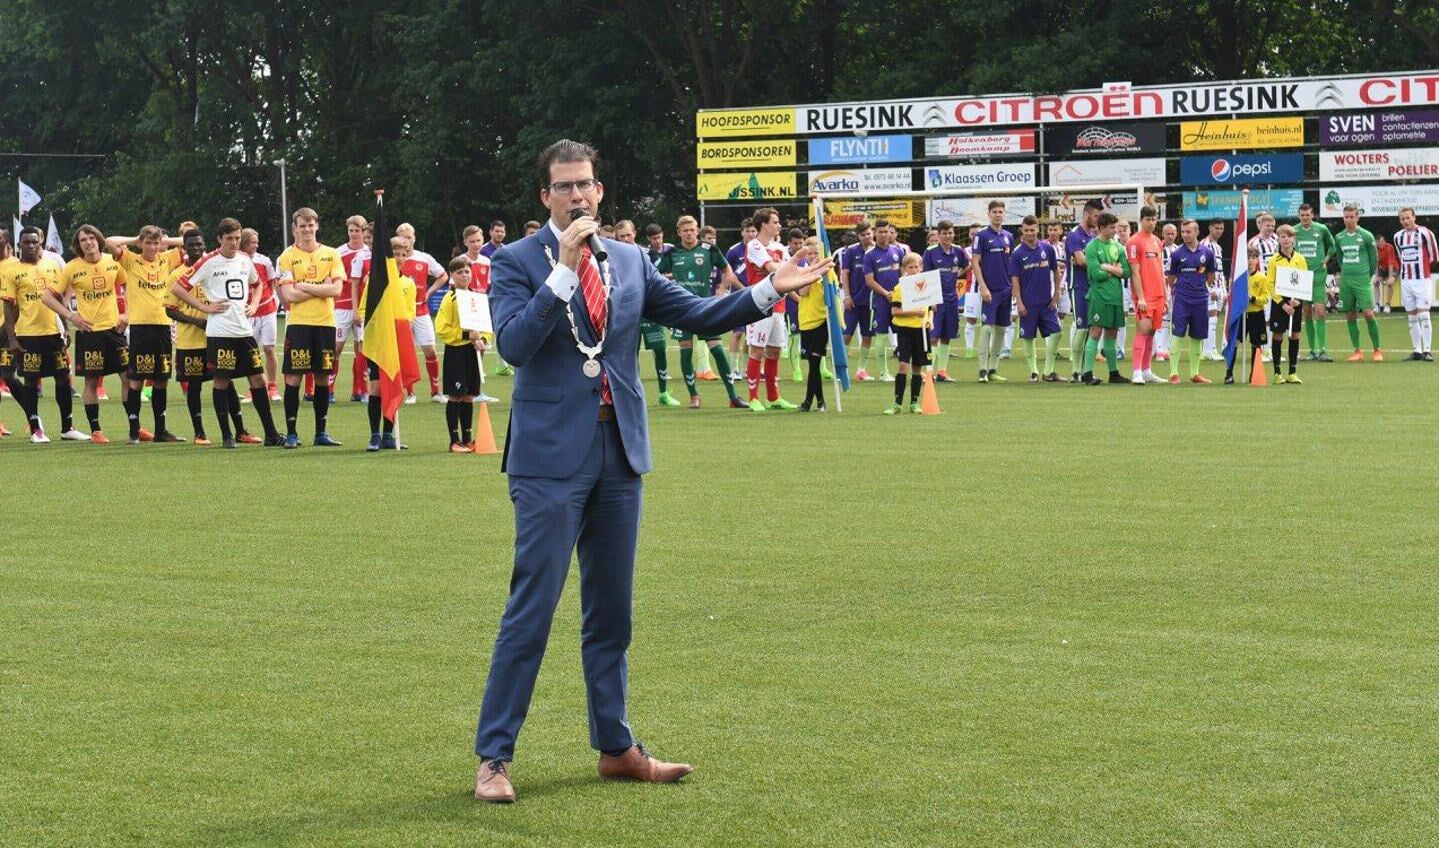 Burgemeester Joost van Oostrum verwelkomde alle deelnemende teams en openen het toernooi officieel. Foto: PR. 